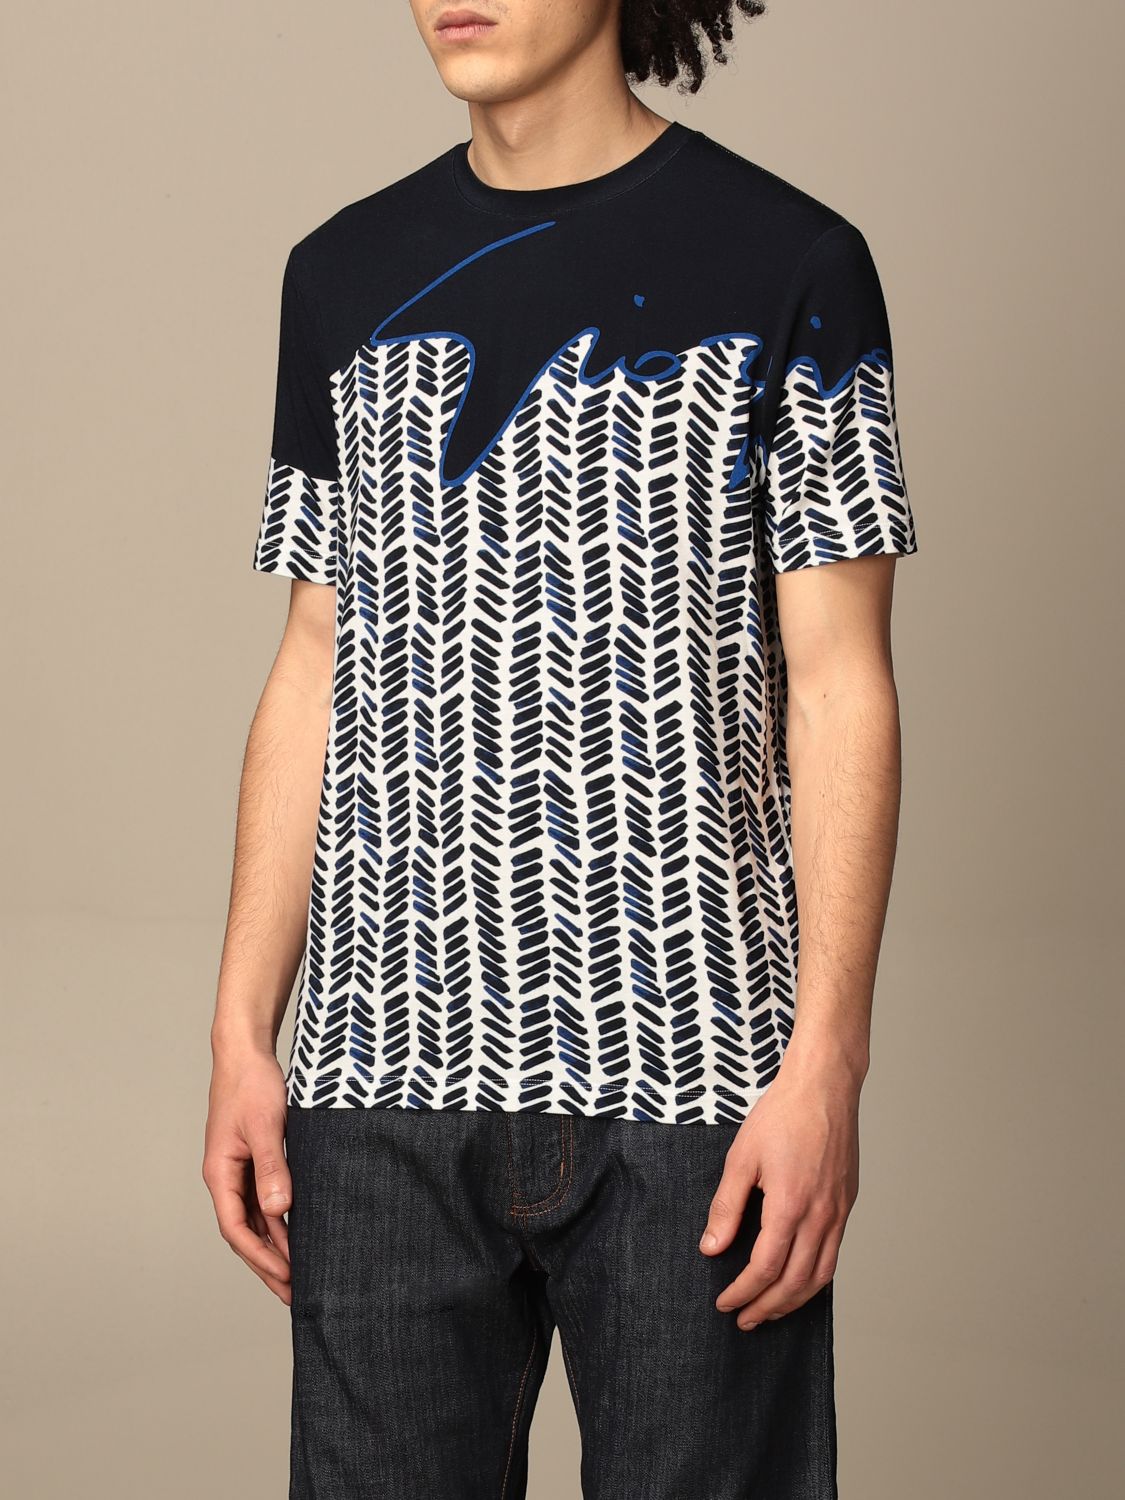 Giorgio Armani Logo Viscose T-shirt in Blue for Men